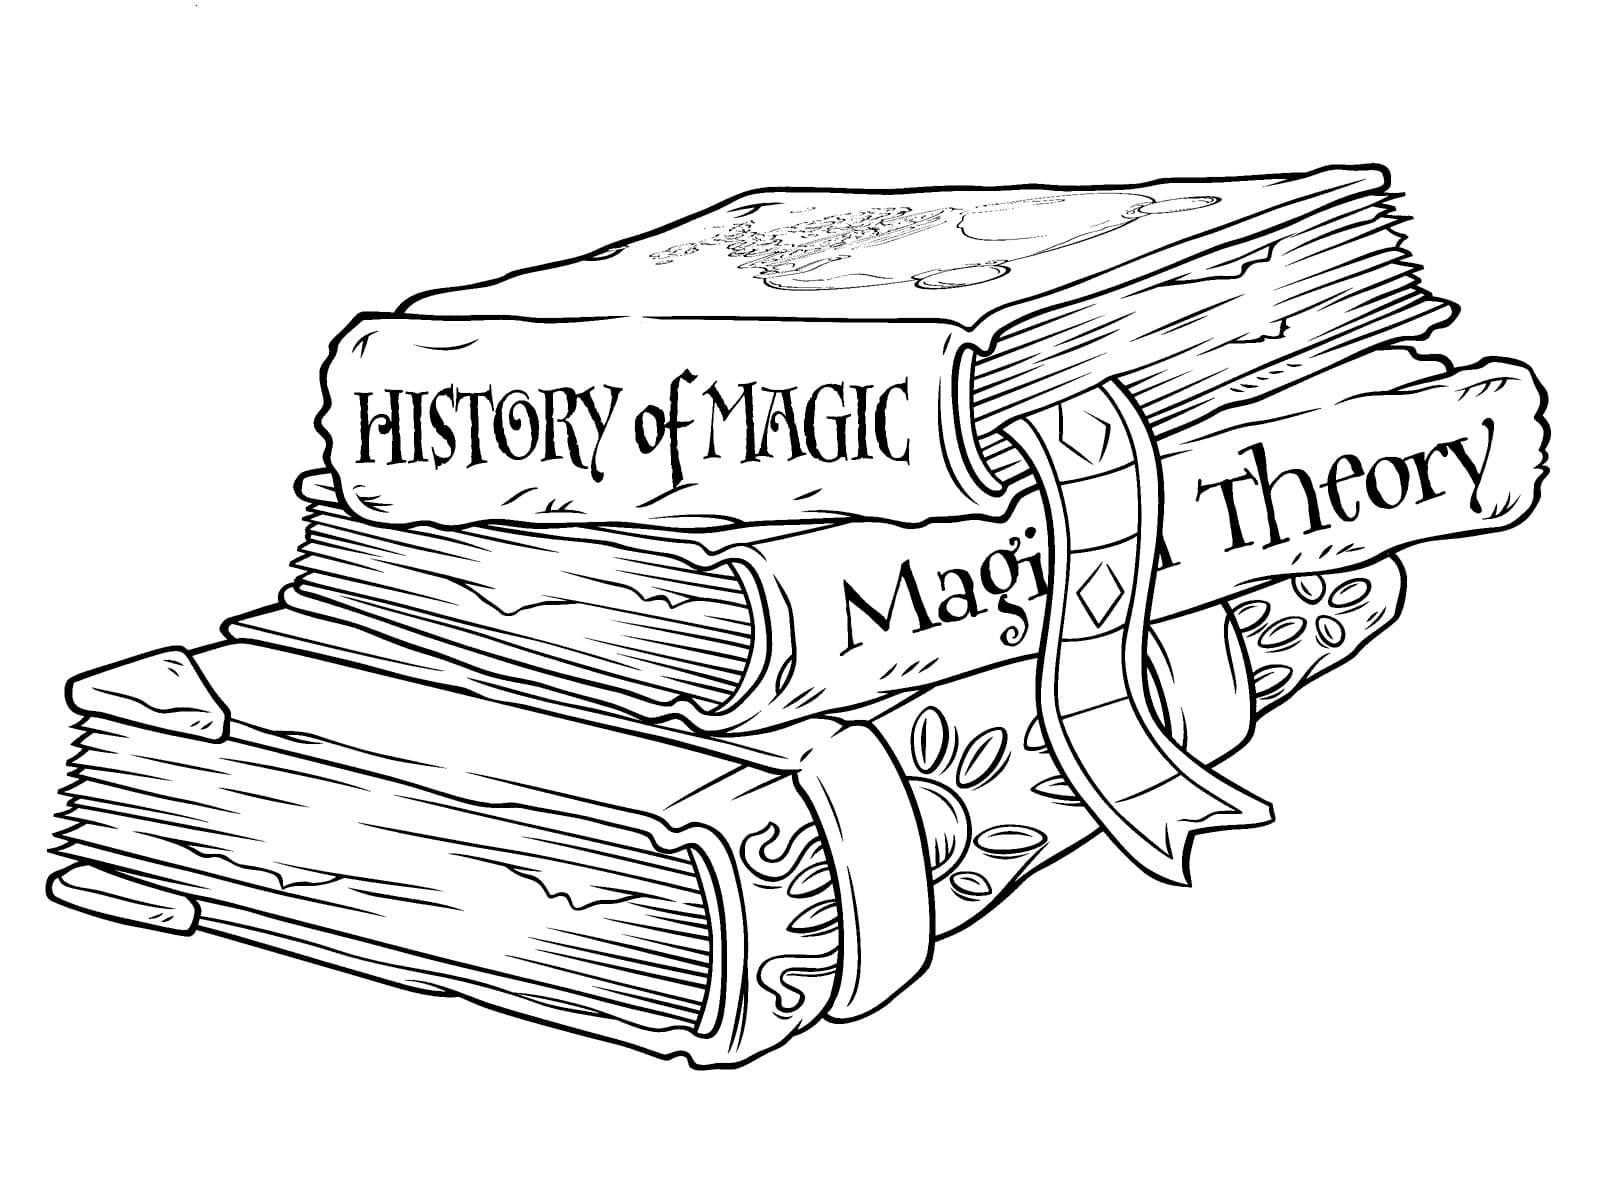 Coloriage Harry Potter - 80 pages à colorier à imprimer gratuits